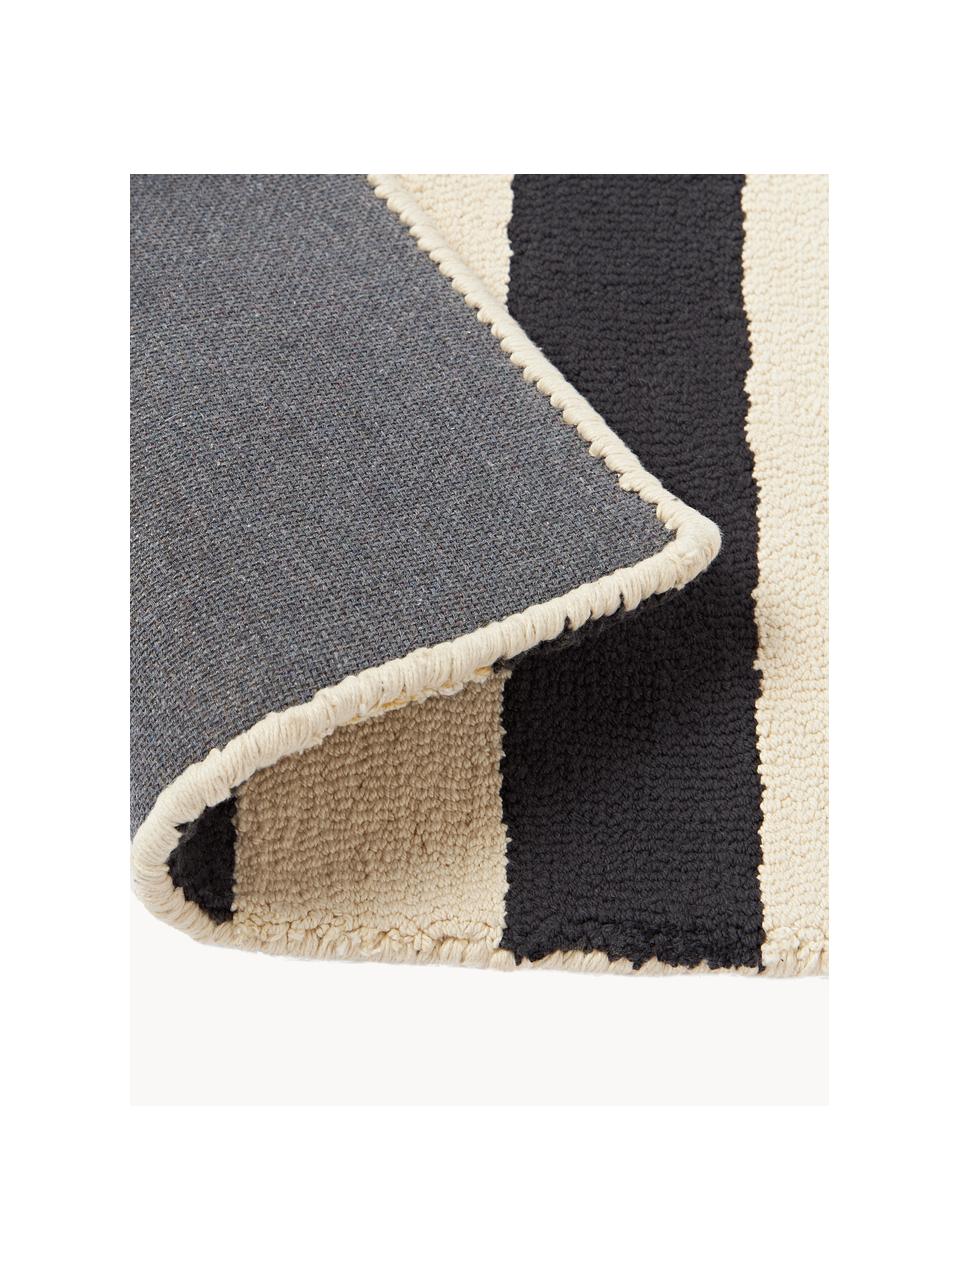 Ręcznie tuftowana podkładka Kio Stripe, 4 szt., 100% bawełna, Czarny, kremowobiały, S 35 x D 45 cm